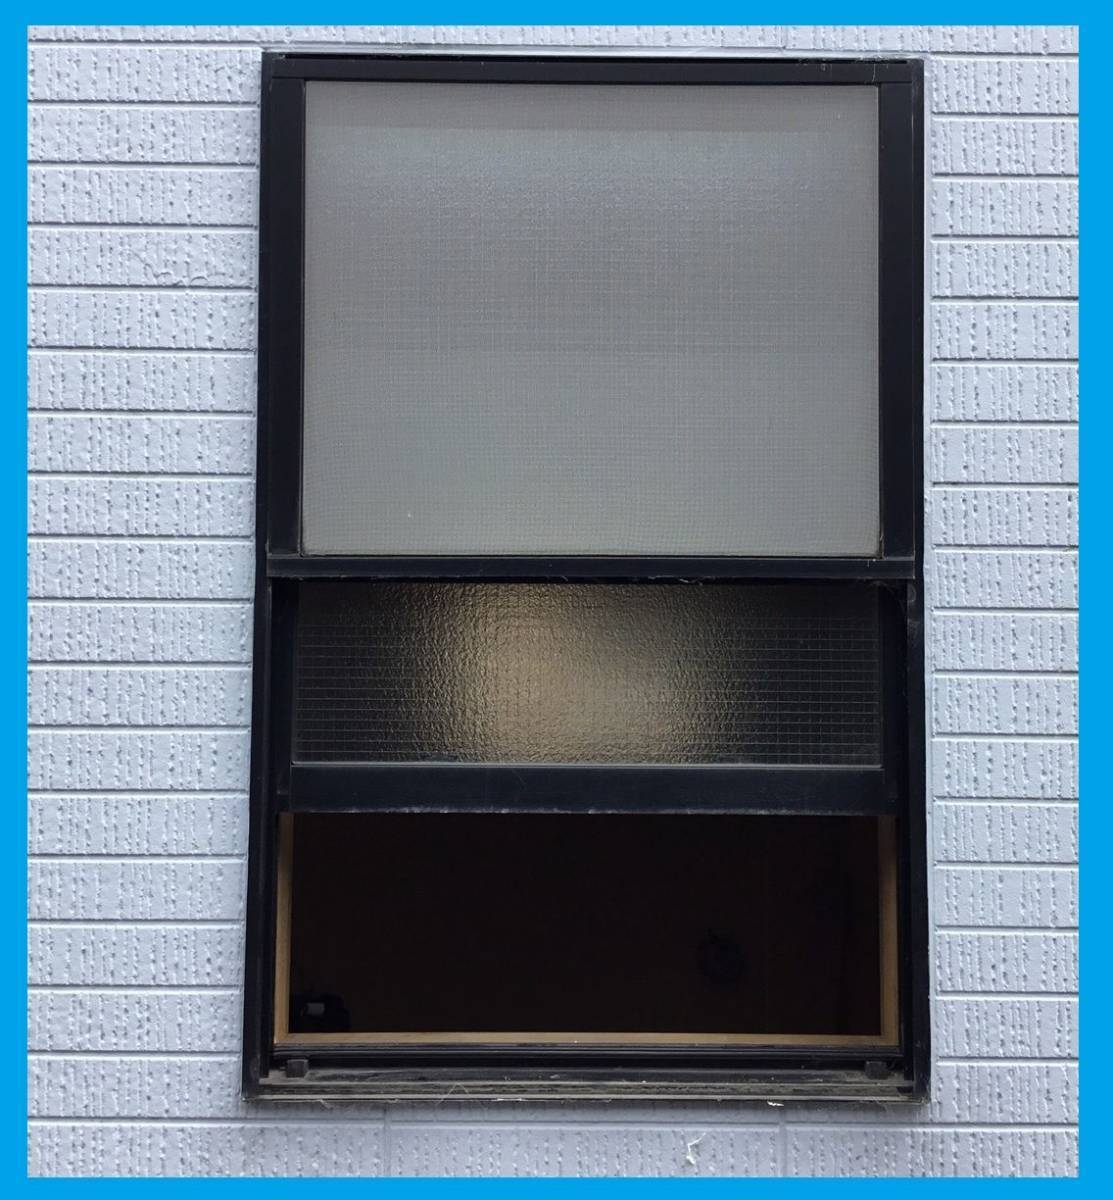 スルガリックス 静岡店の新しい窓へ交換。既存のものとは違う種類の窓へ。の施工前の写真2